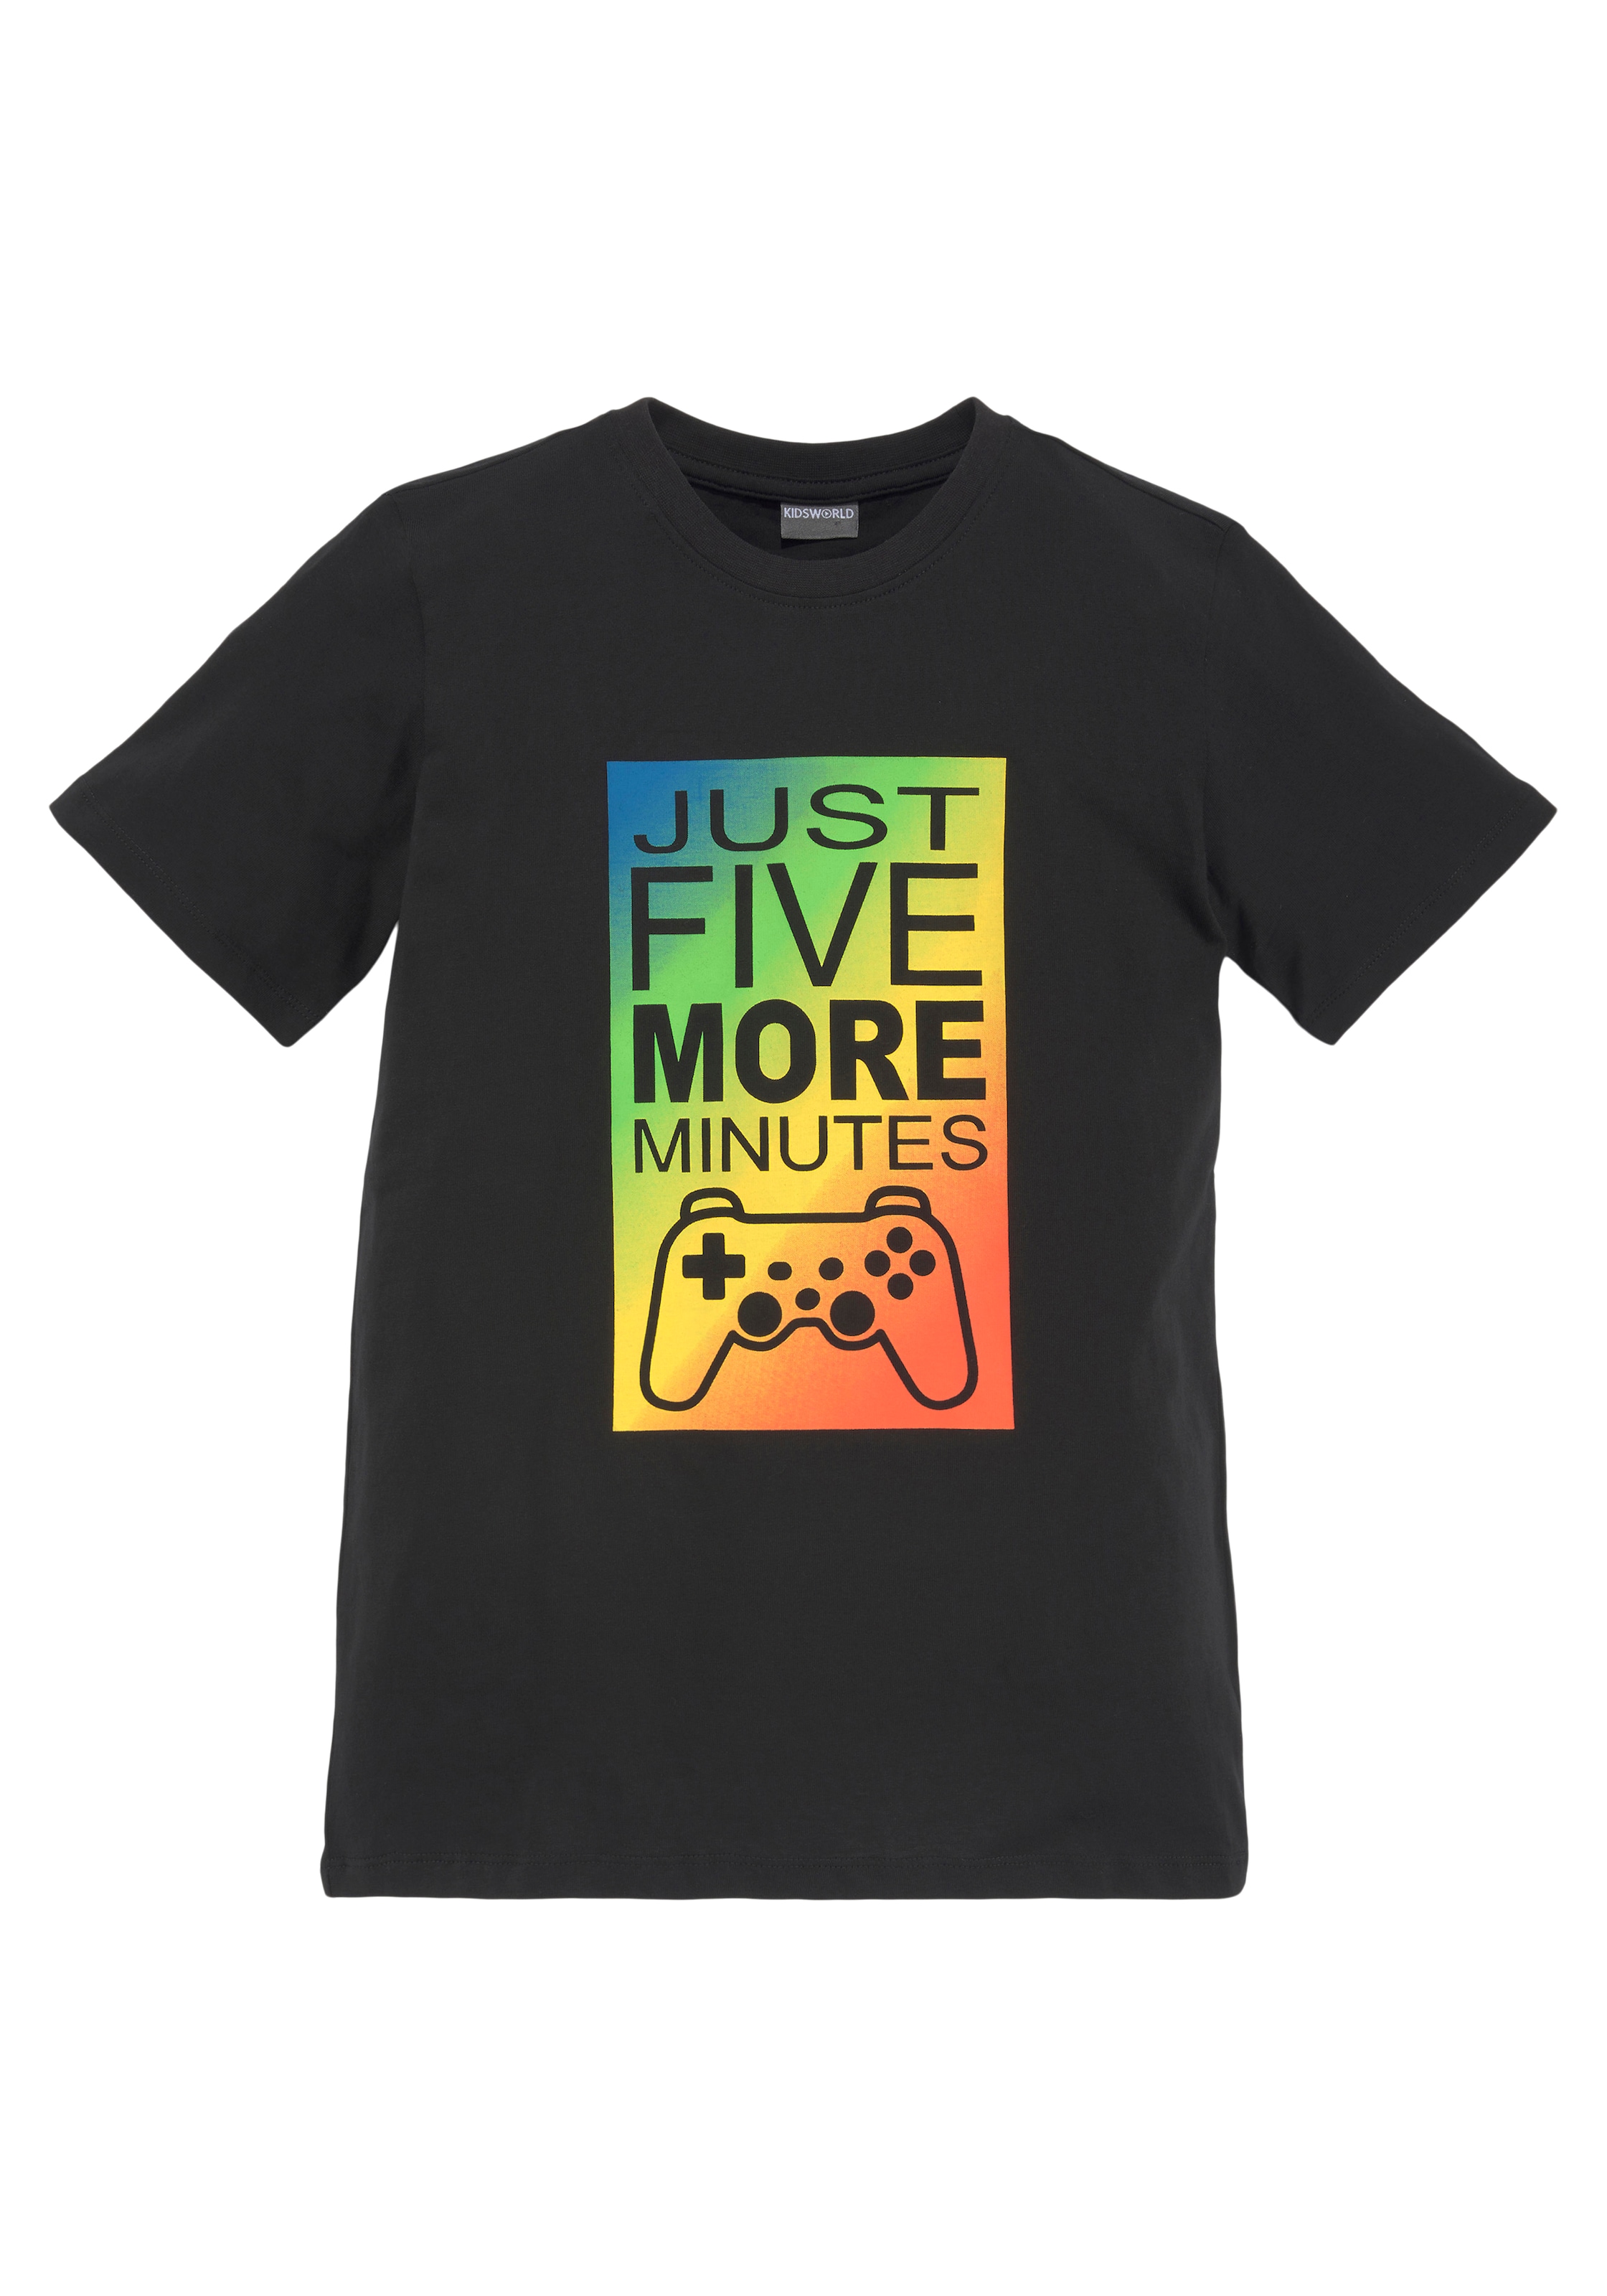 MINUTES«, KIDSWORLD Gamer MORE »JUST 5 T-Shirt en ✌ ligne Acheter Spruch